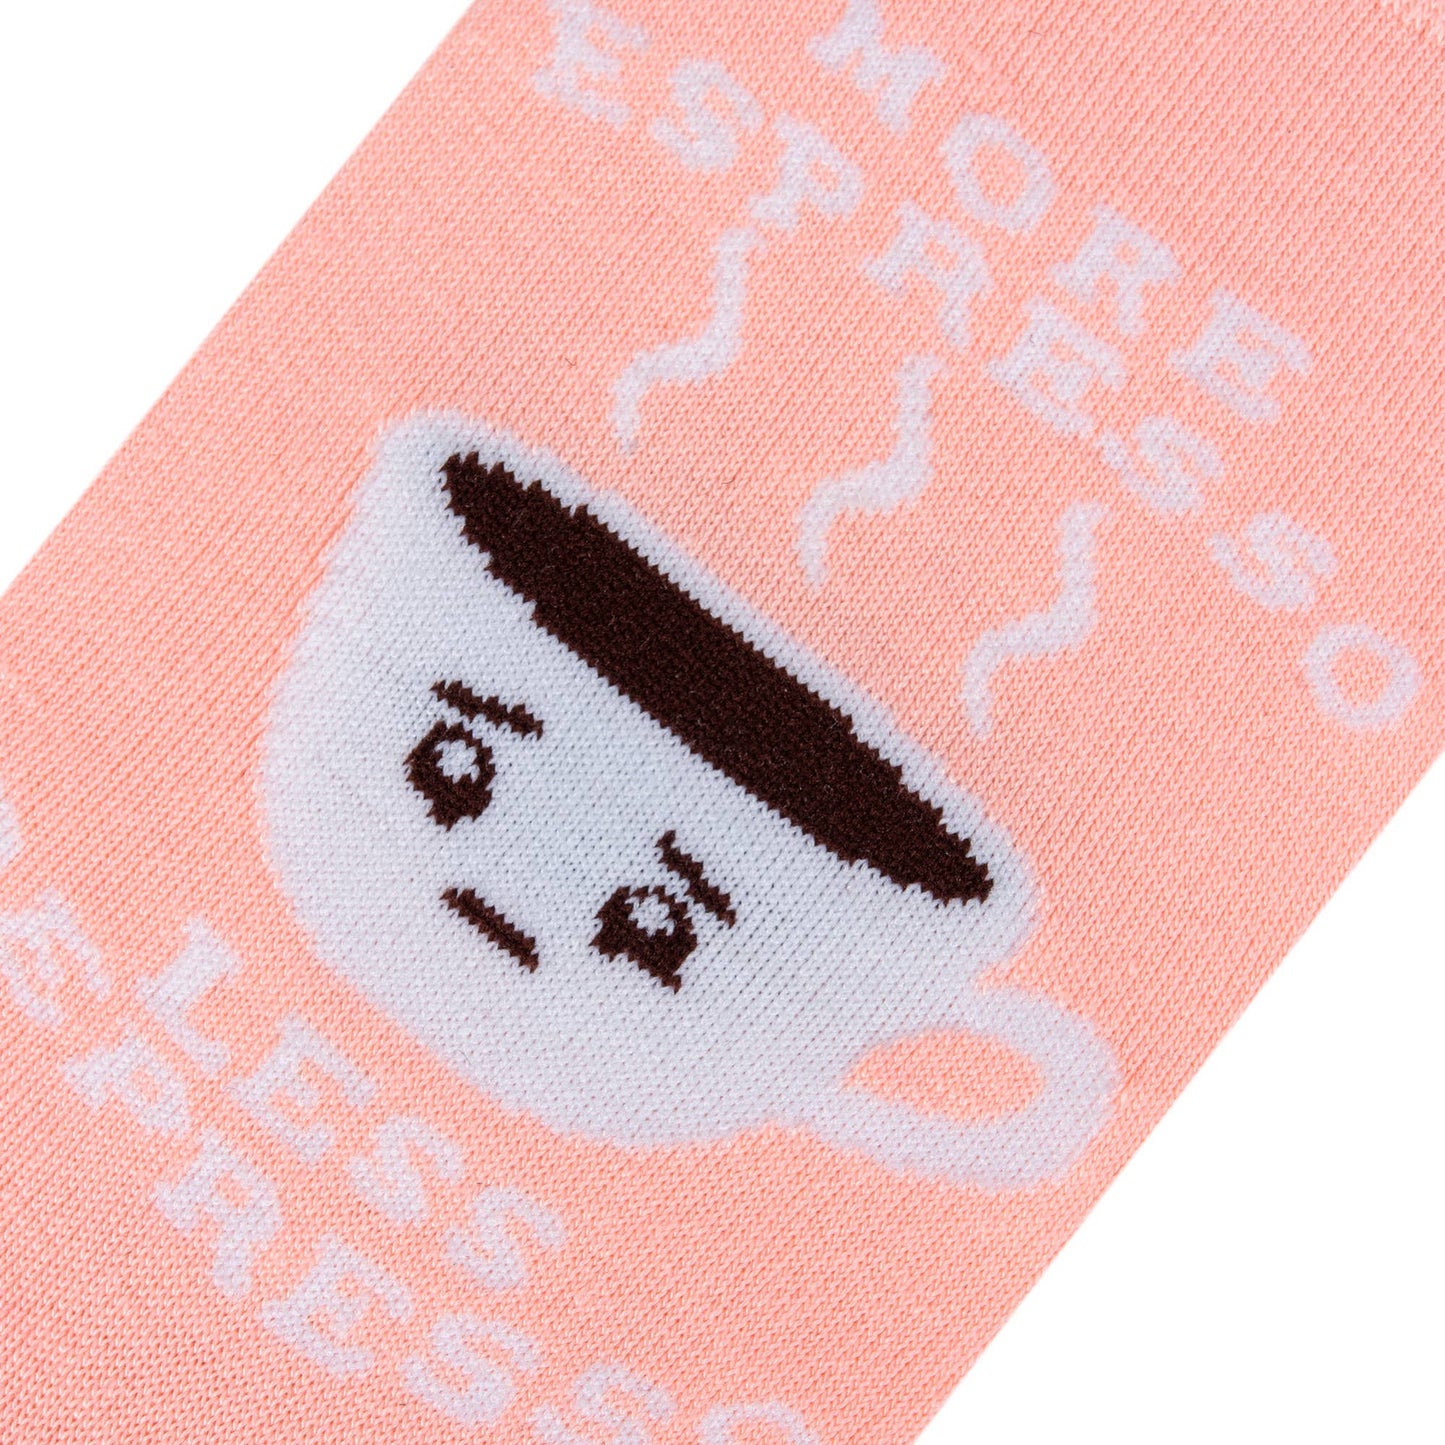 More Espresso women's socks